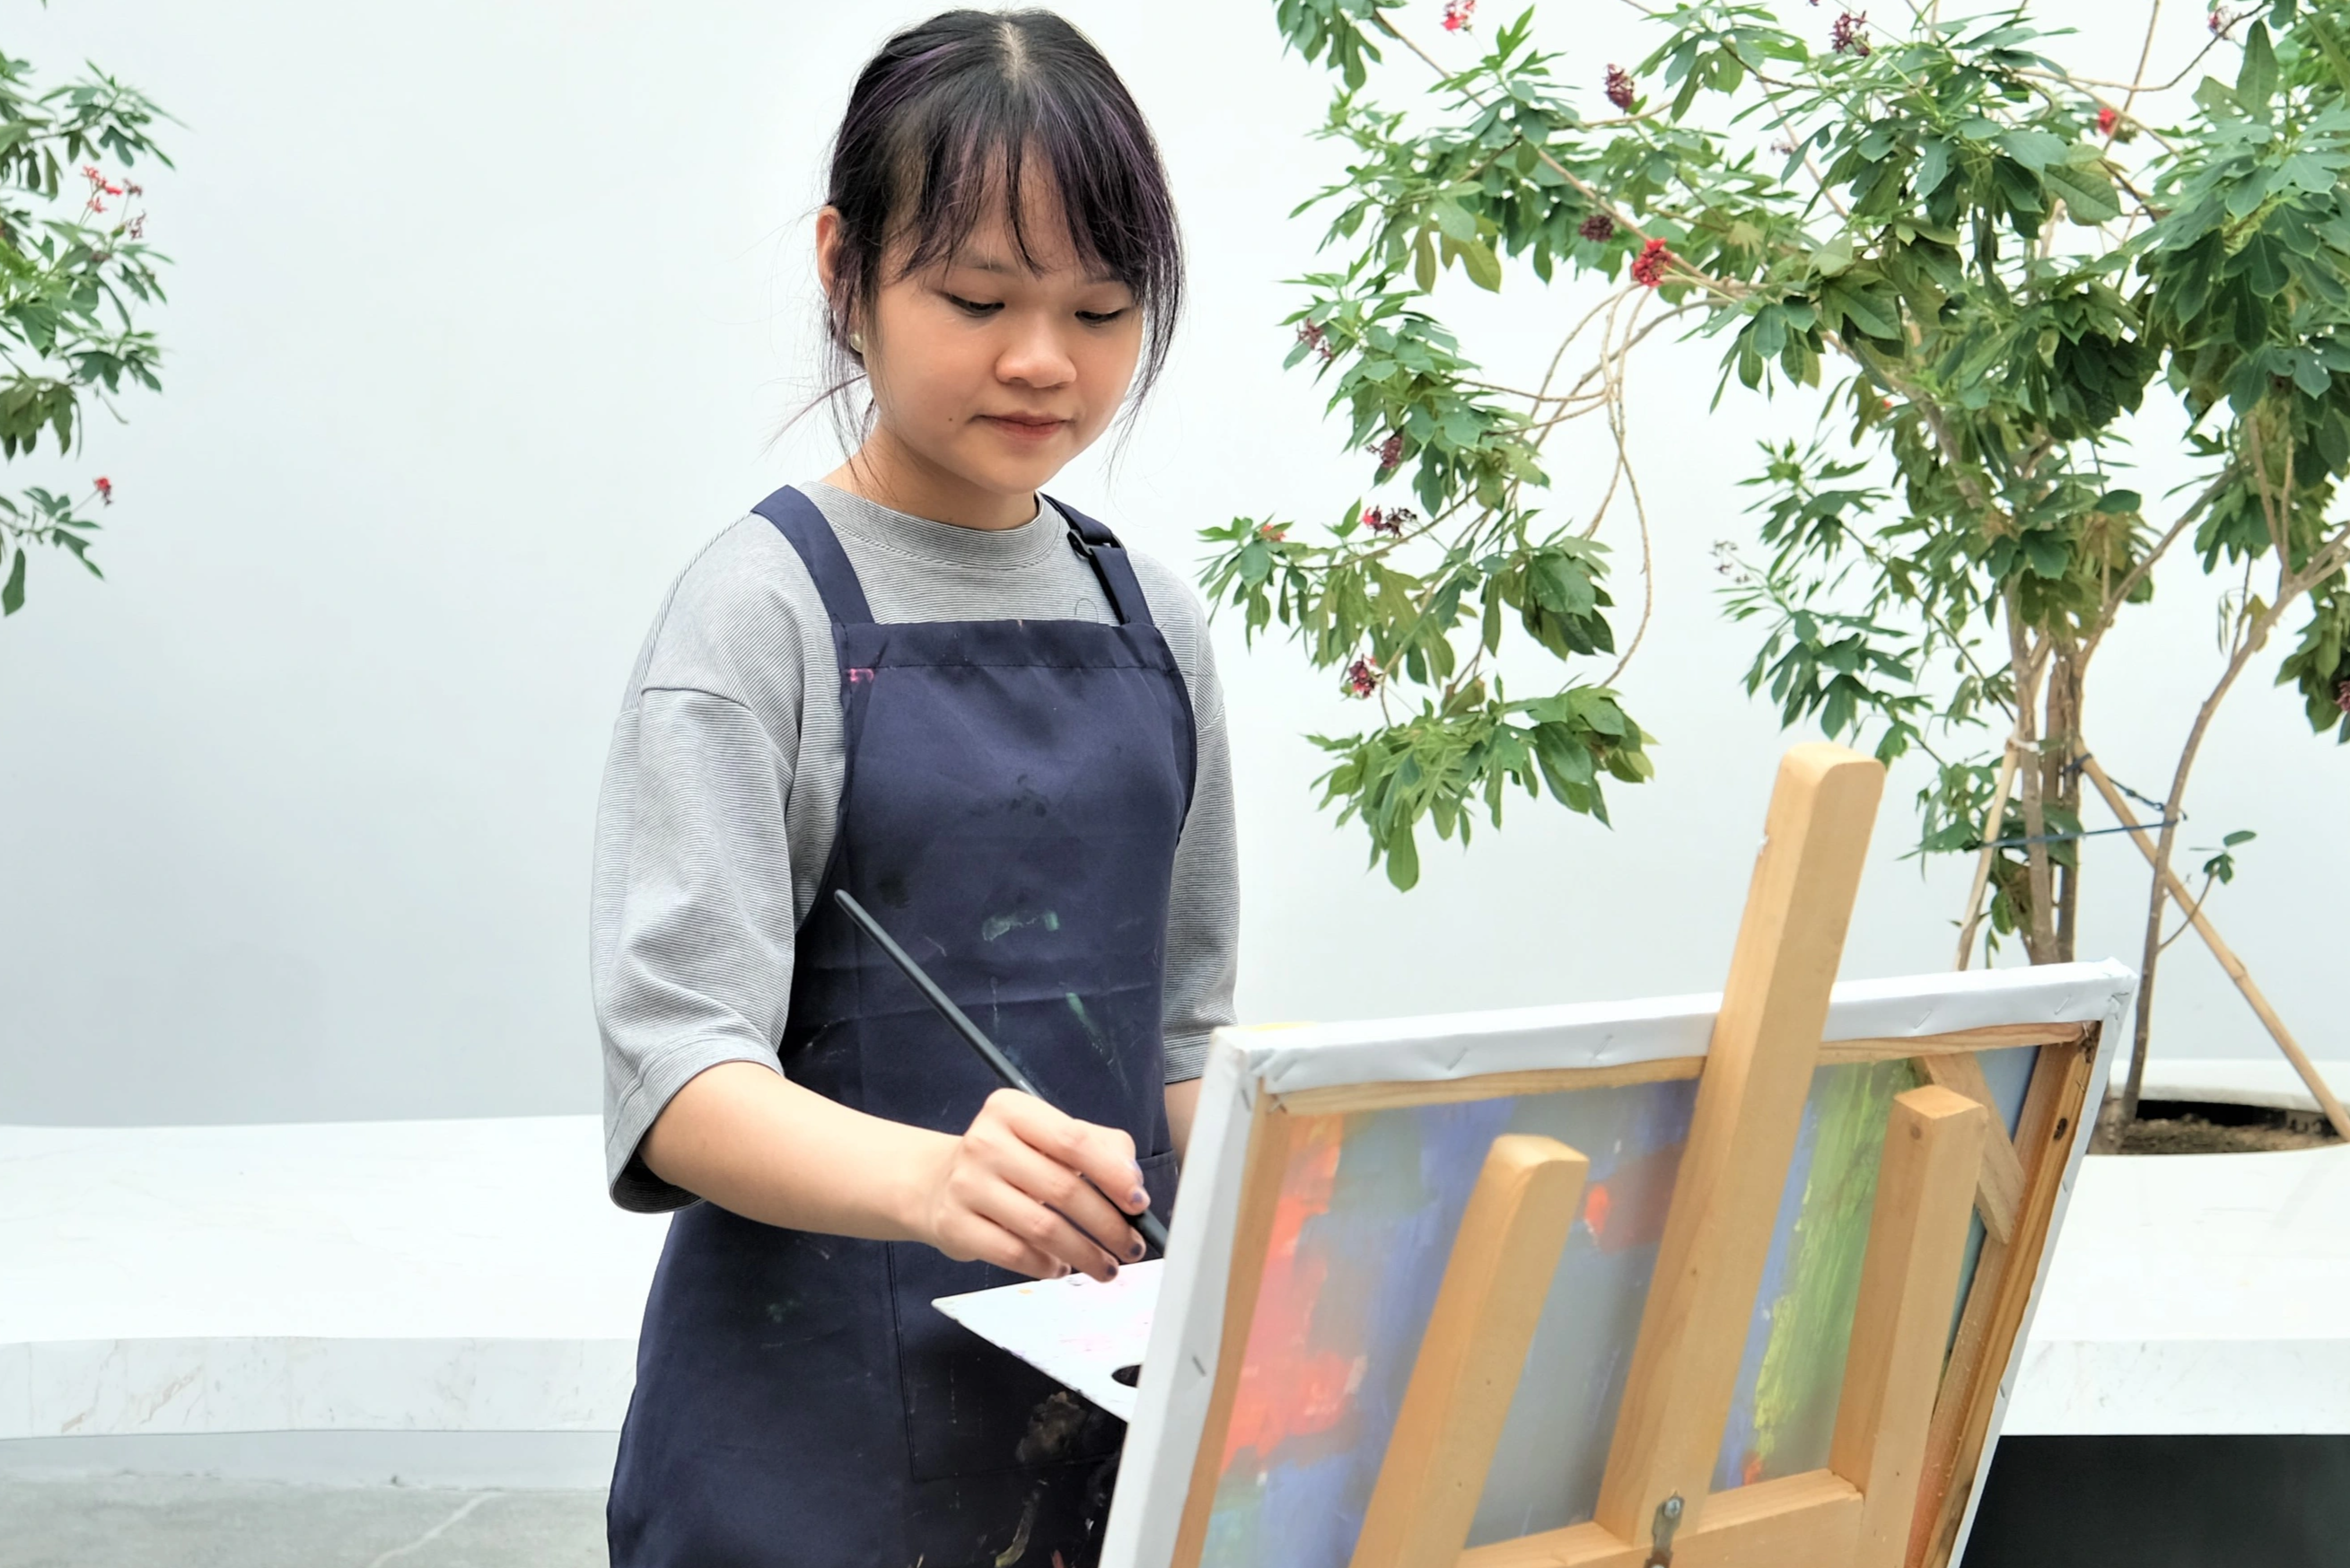 View - Nữ sinh giành học bổng nghệ thuật và cảm hứng bài luận từ em gái | Báo Dân trí